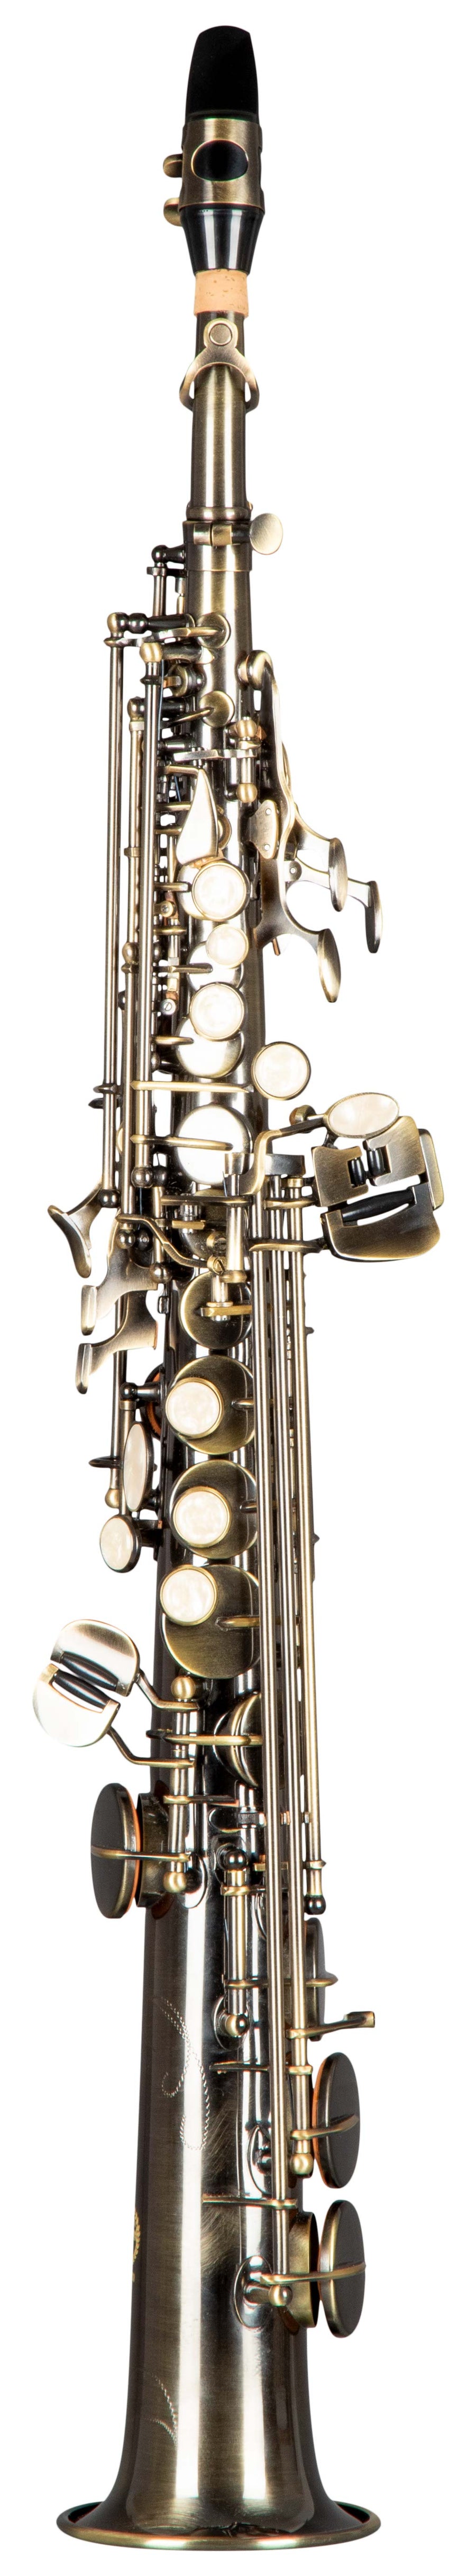 Grassi GR SSP830 Soprano Saxophone in Bb with 2 Necks Antique Finish (School Series)